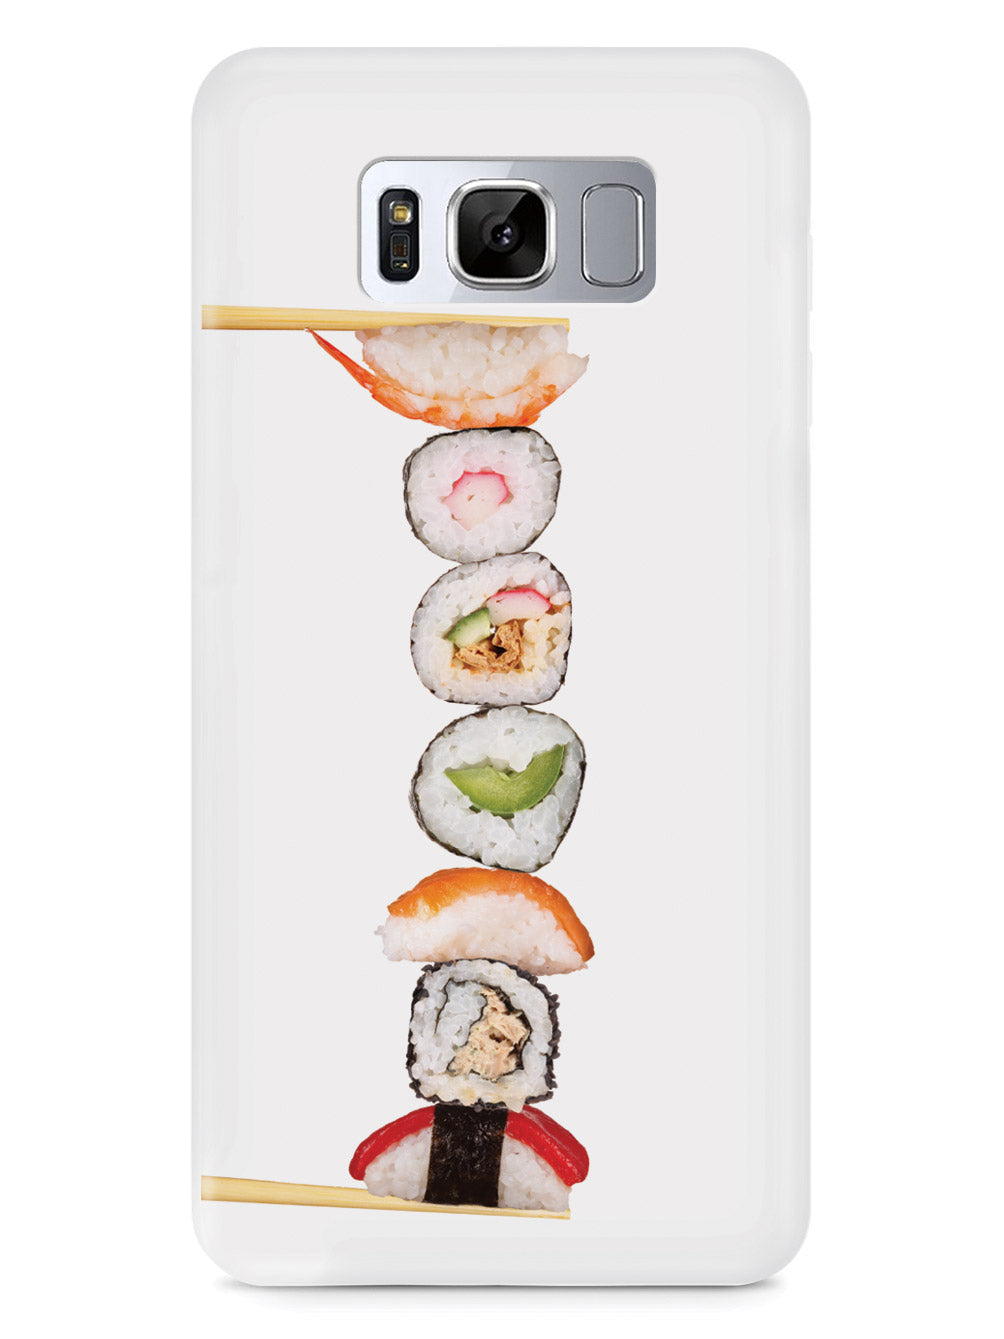 Sushi Rolls Food Case